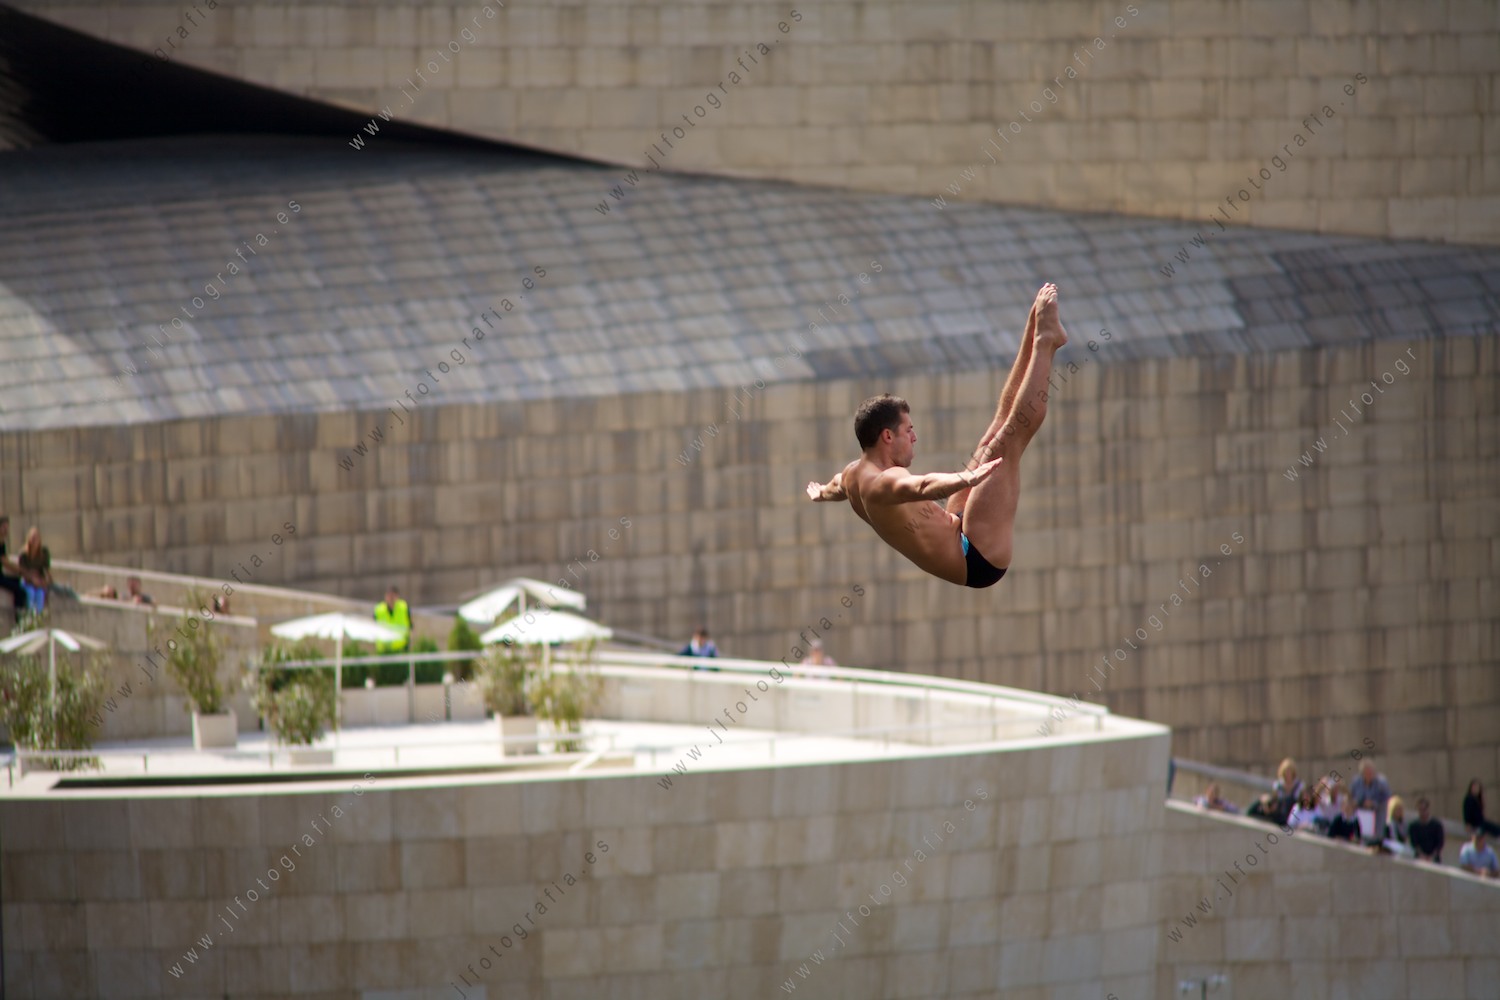 Pose espectacular durante el Red Bull Cliff Diving en Bilbao con el museo Guggenheim como testigo